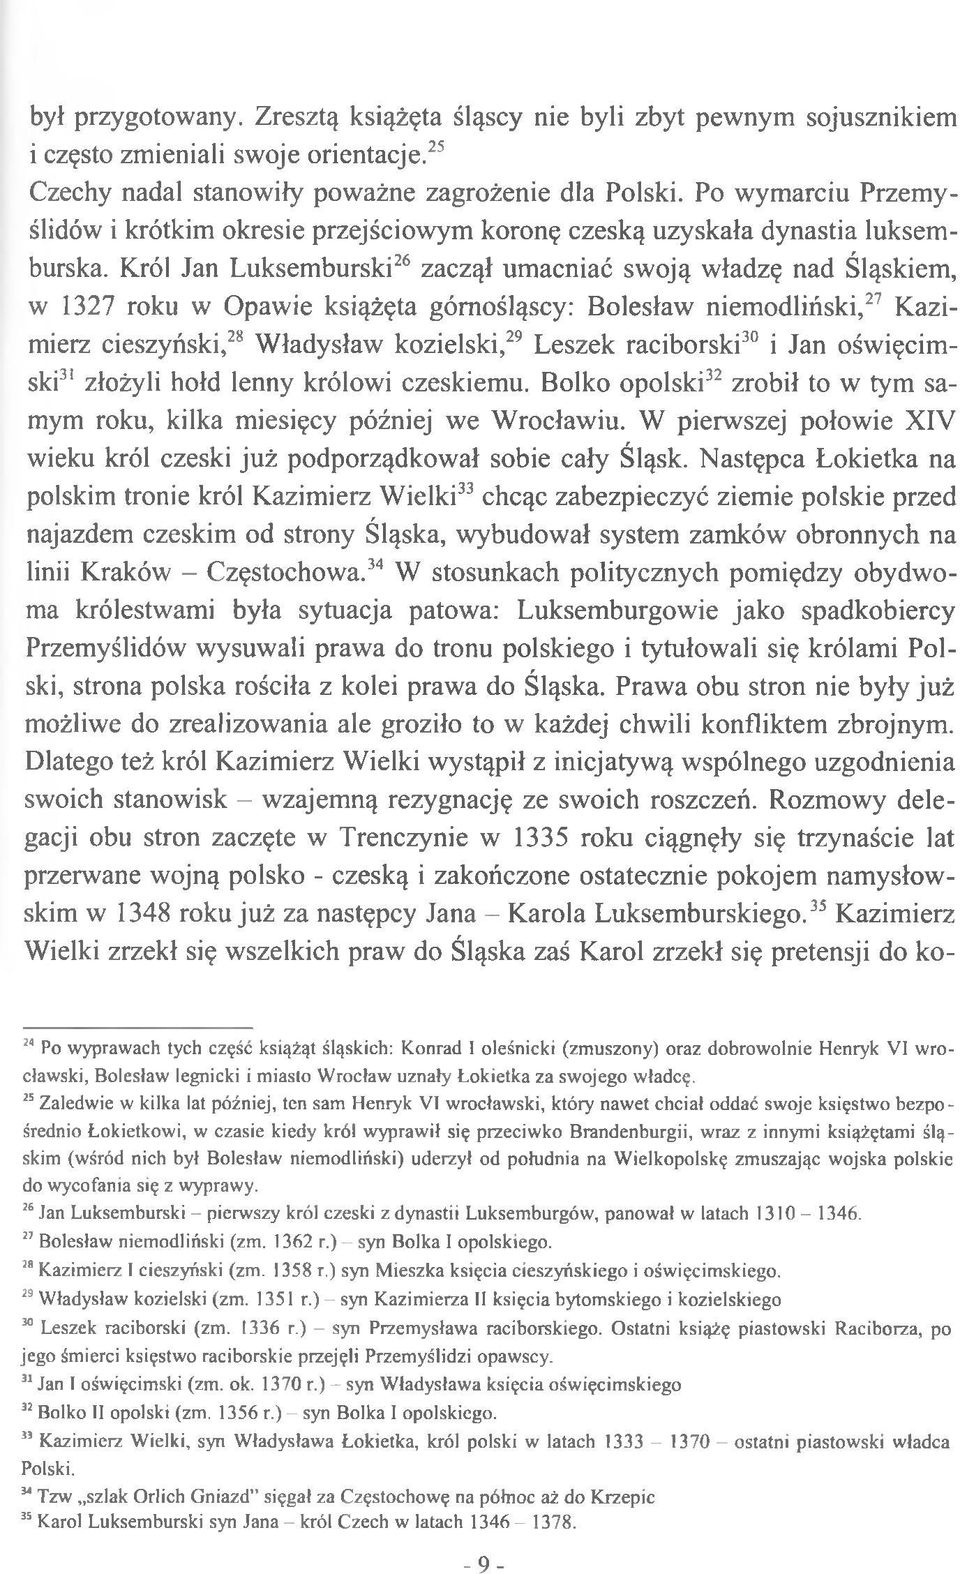 Król Jan Luksemburski26 zaczął umacniać swoją władzę nad Śląskiem, w 1327 roku w Opawie książęta górnośląscy: Bolesław niemodliński,27 Kazimierz cieszyński,28 Władysław kozielski,29 Leszek